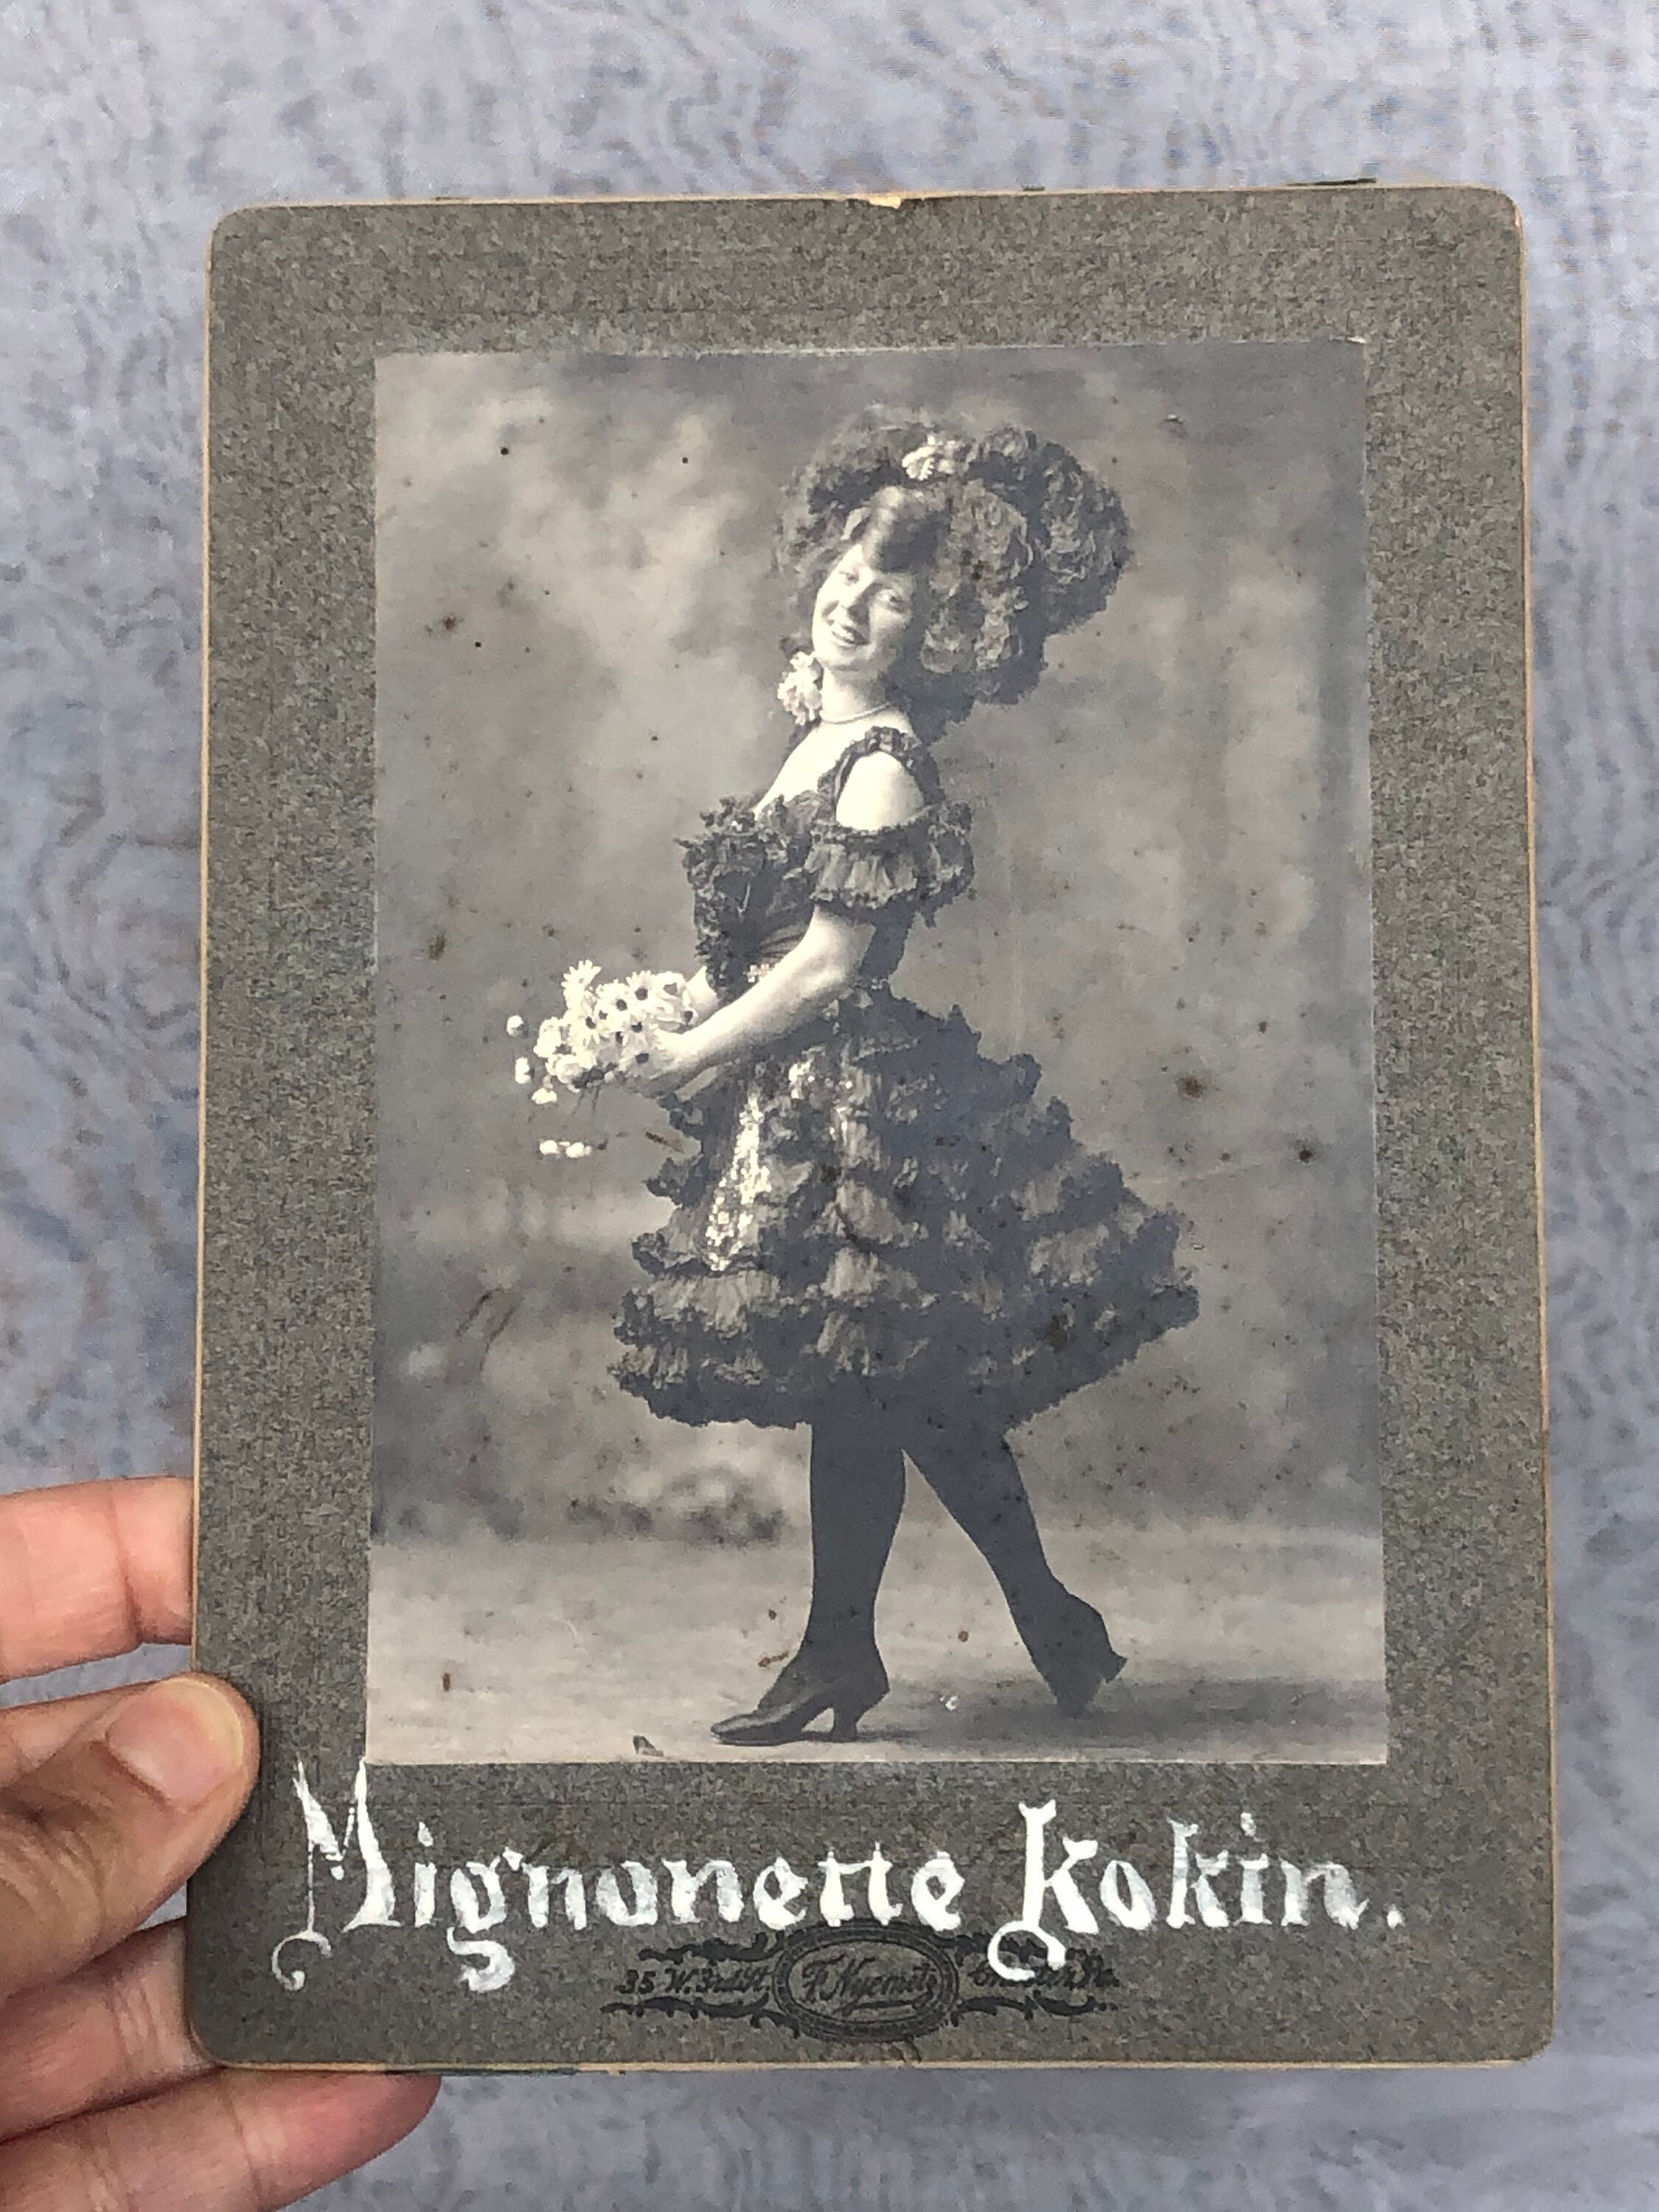 Antique Vaudeville Photo of Mignonette Kokin Vintage Cabinet picture